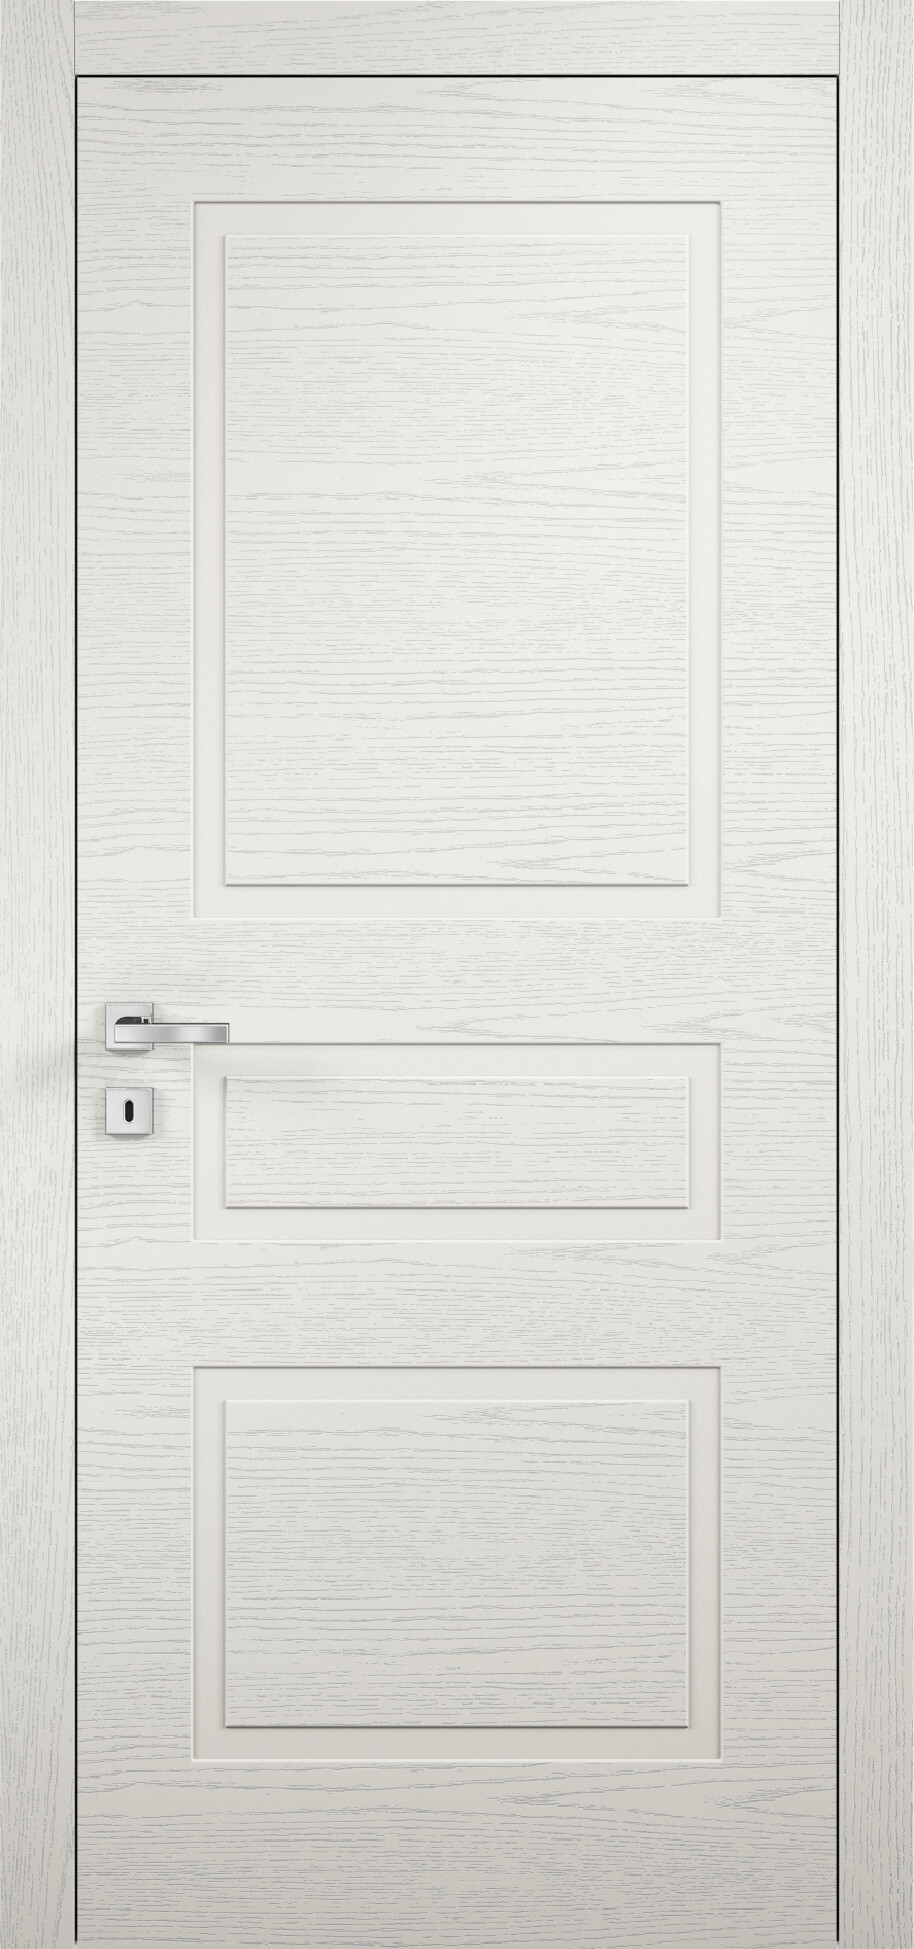 межкомнатные двери эмалированная межкомнатная дверь glamour 103 эмаль слоновая кость